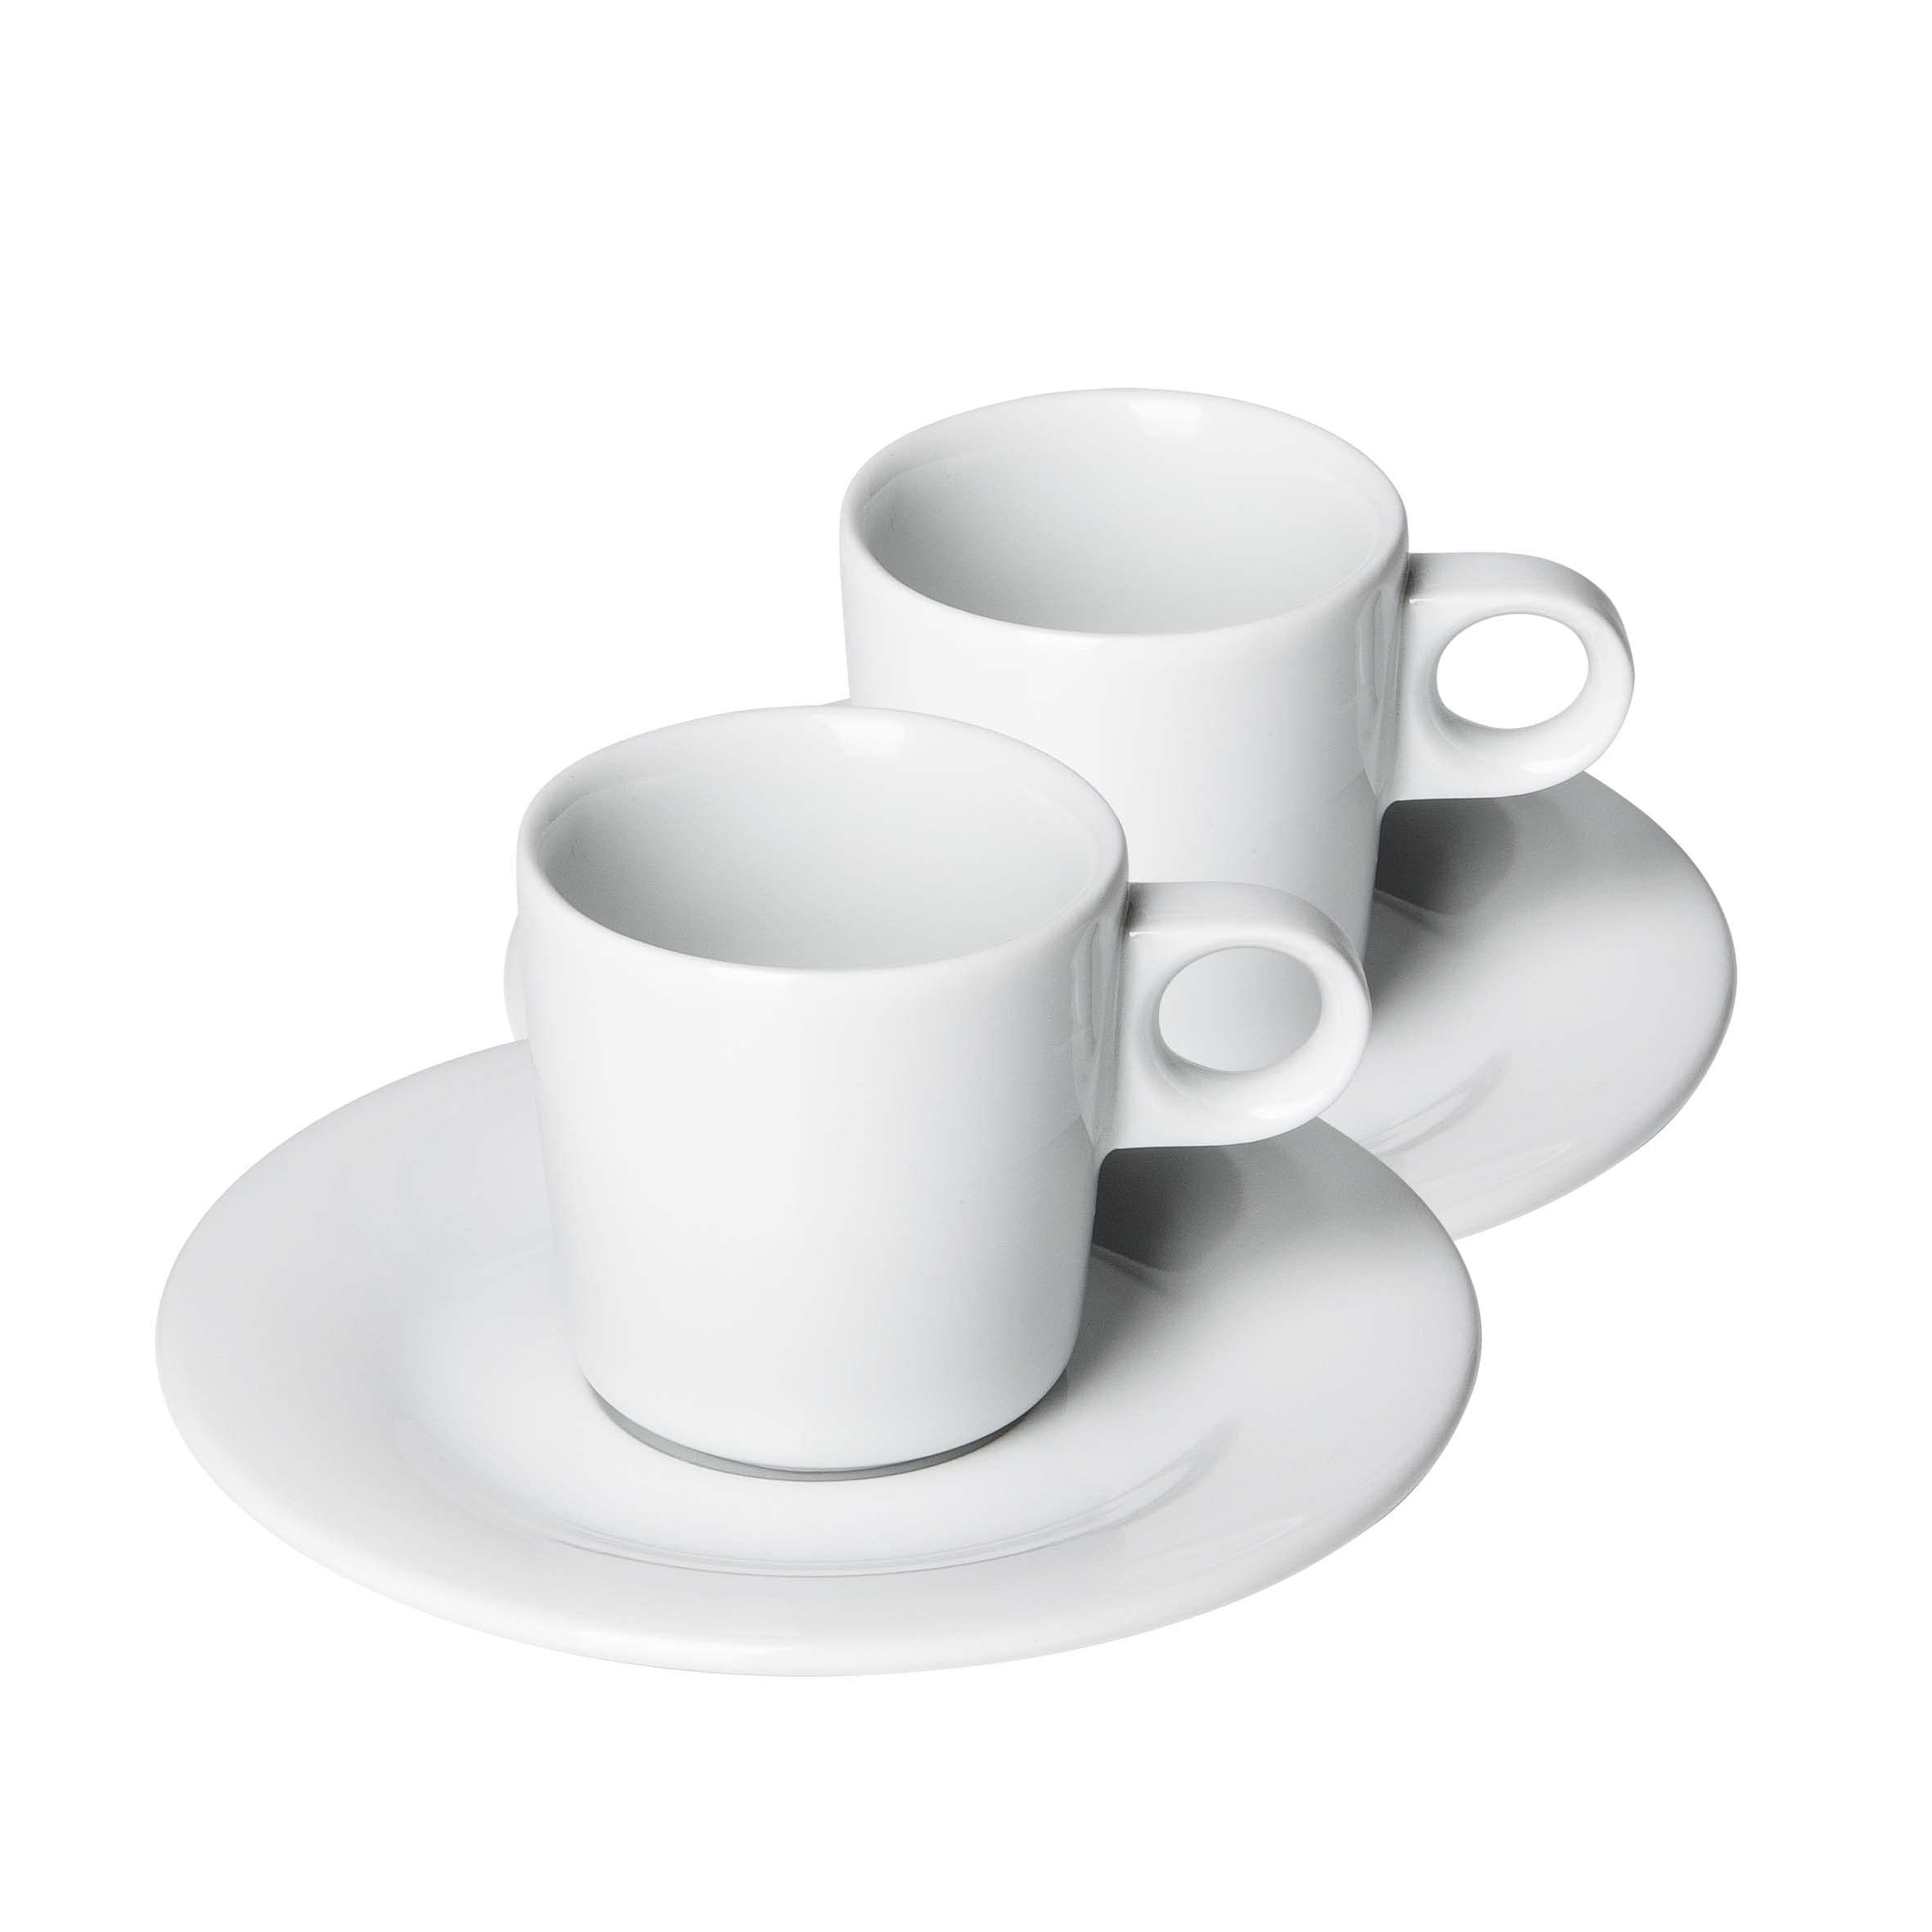 Mahlwerck Manufaktur Espressotasse Bistro, Porzellan, 80ml, 4-teilig mit Tasse und Untertasse im 2er Set